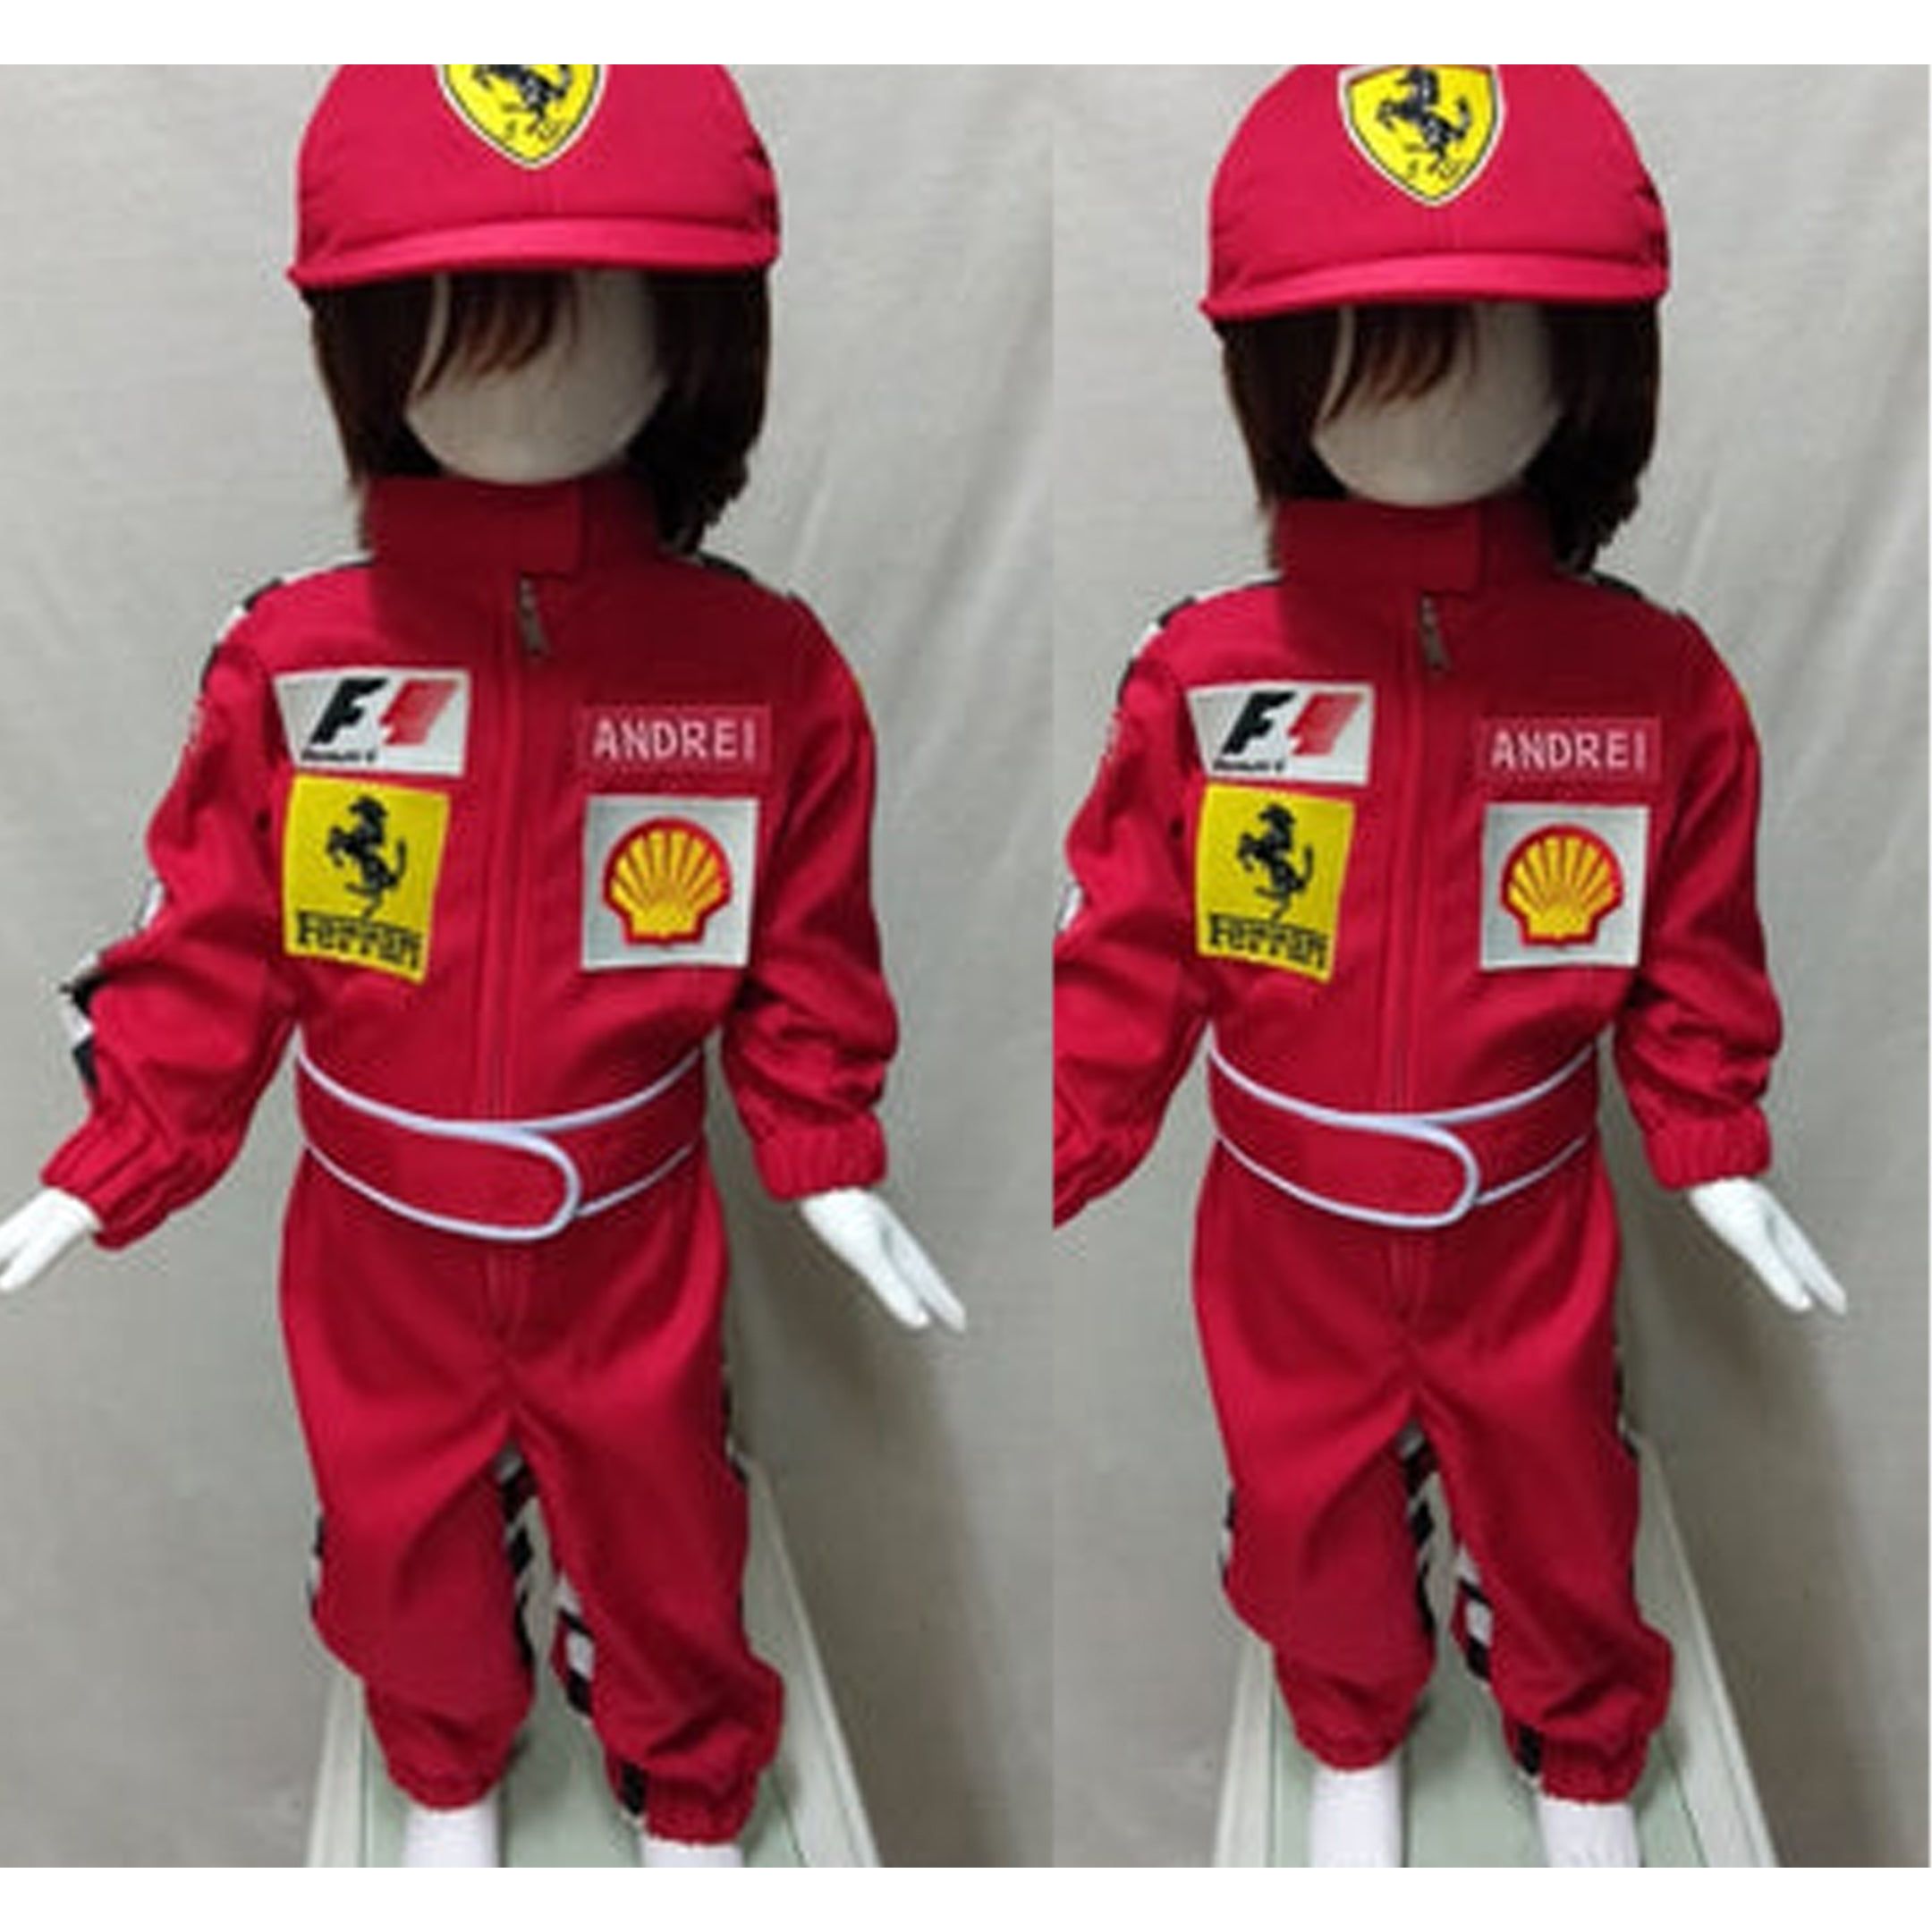 kart racing suit for children-0307